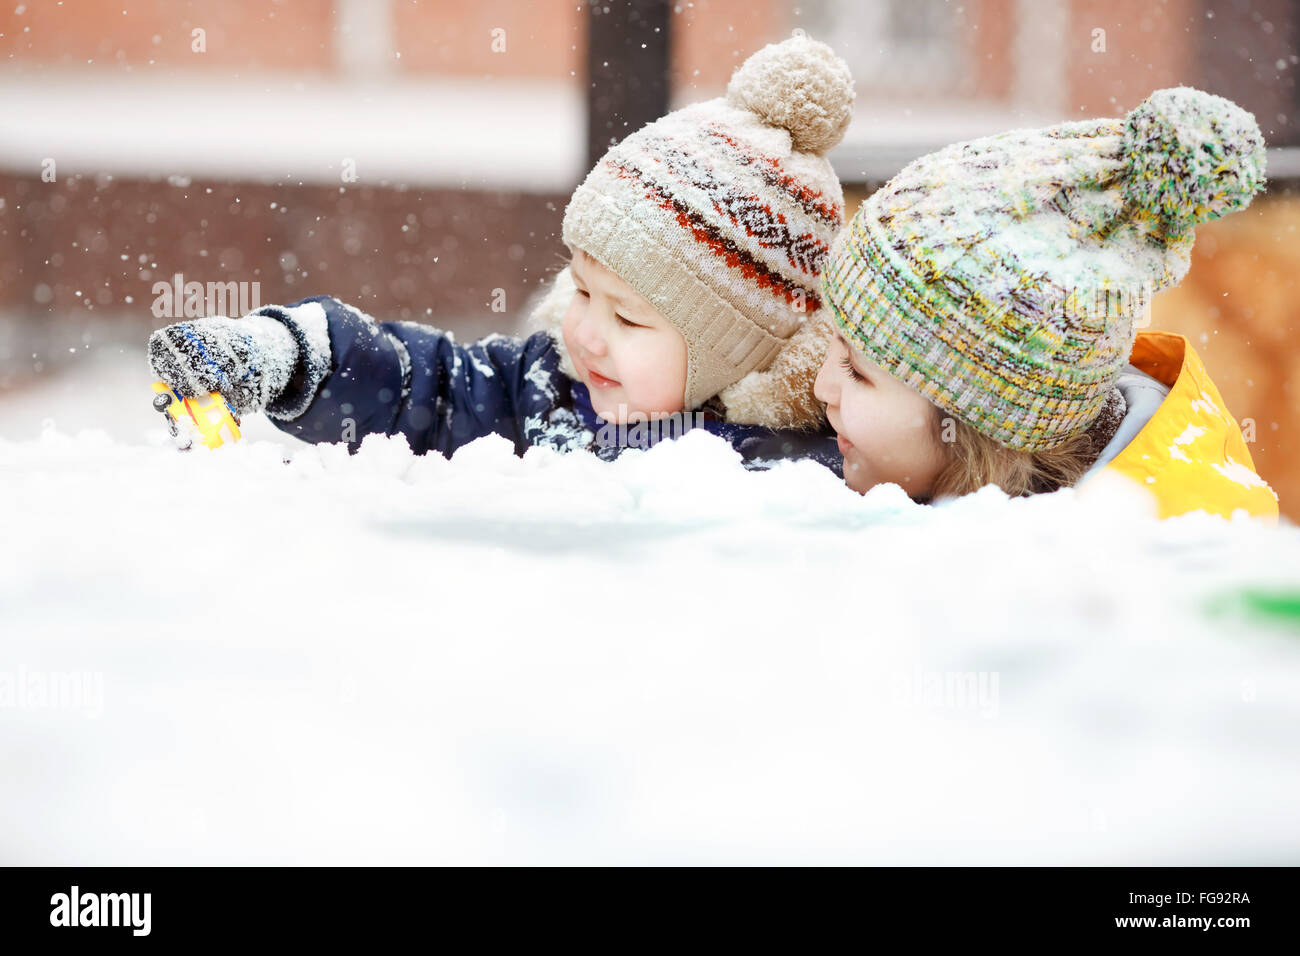 Mutter mit Kind spielen im Schnee auf Winterspaziergang, positive Emotionen, im Freien. Schneefall, Blizzard. Stockfoto